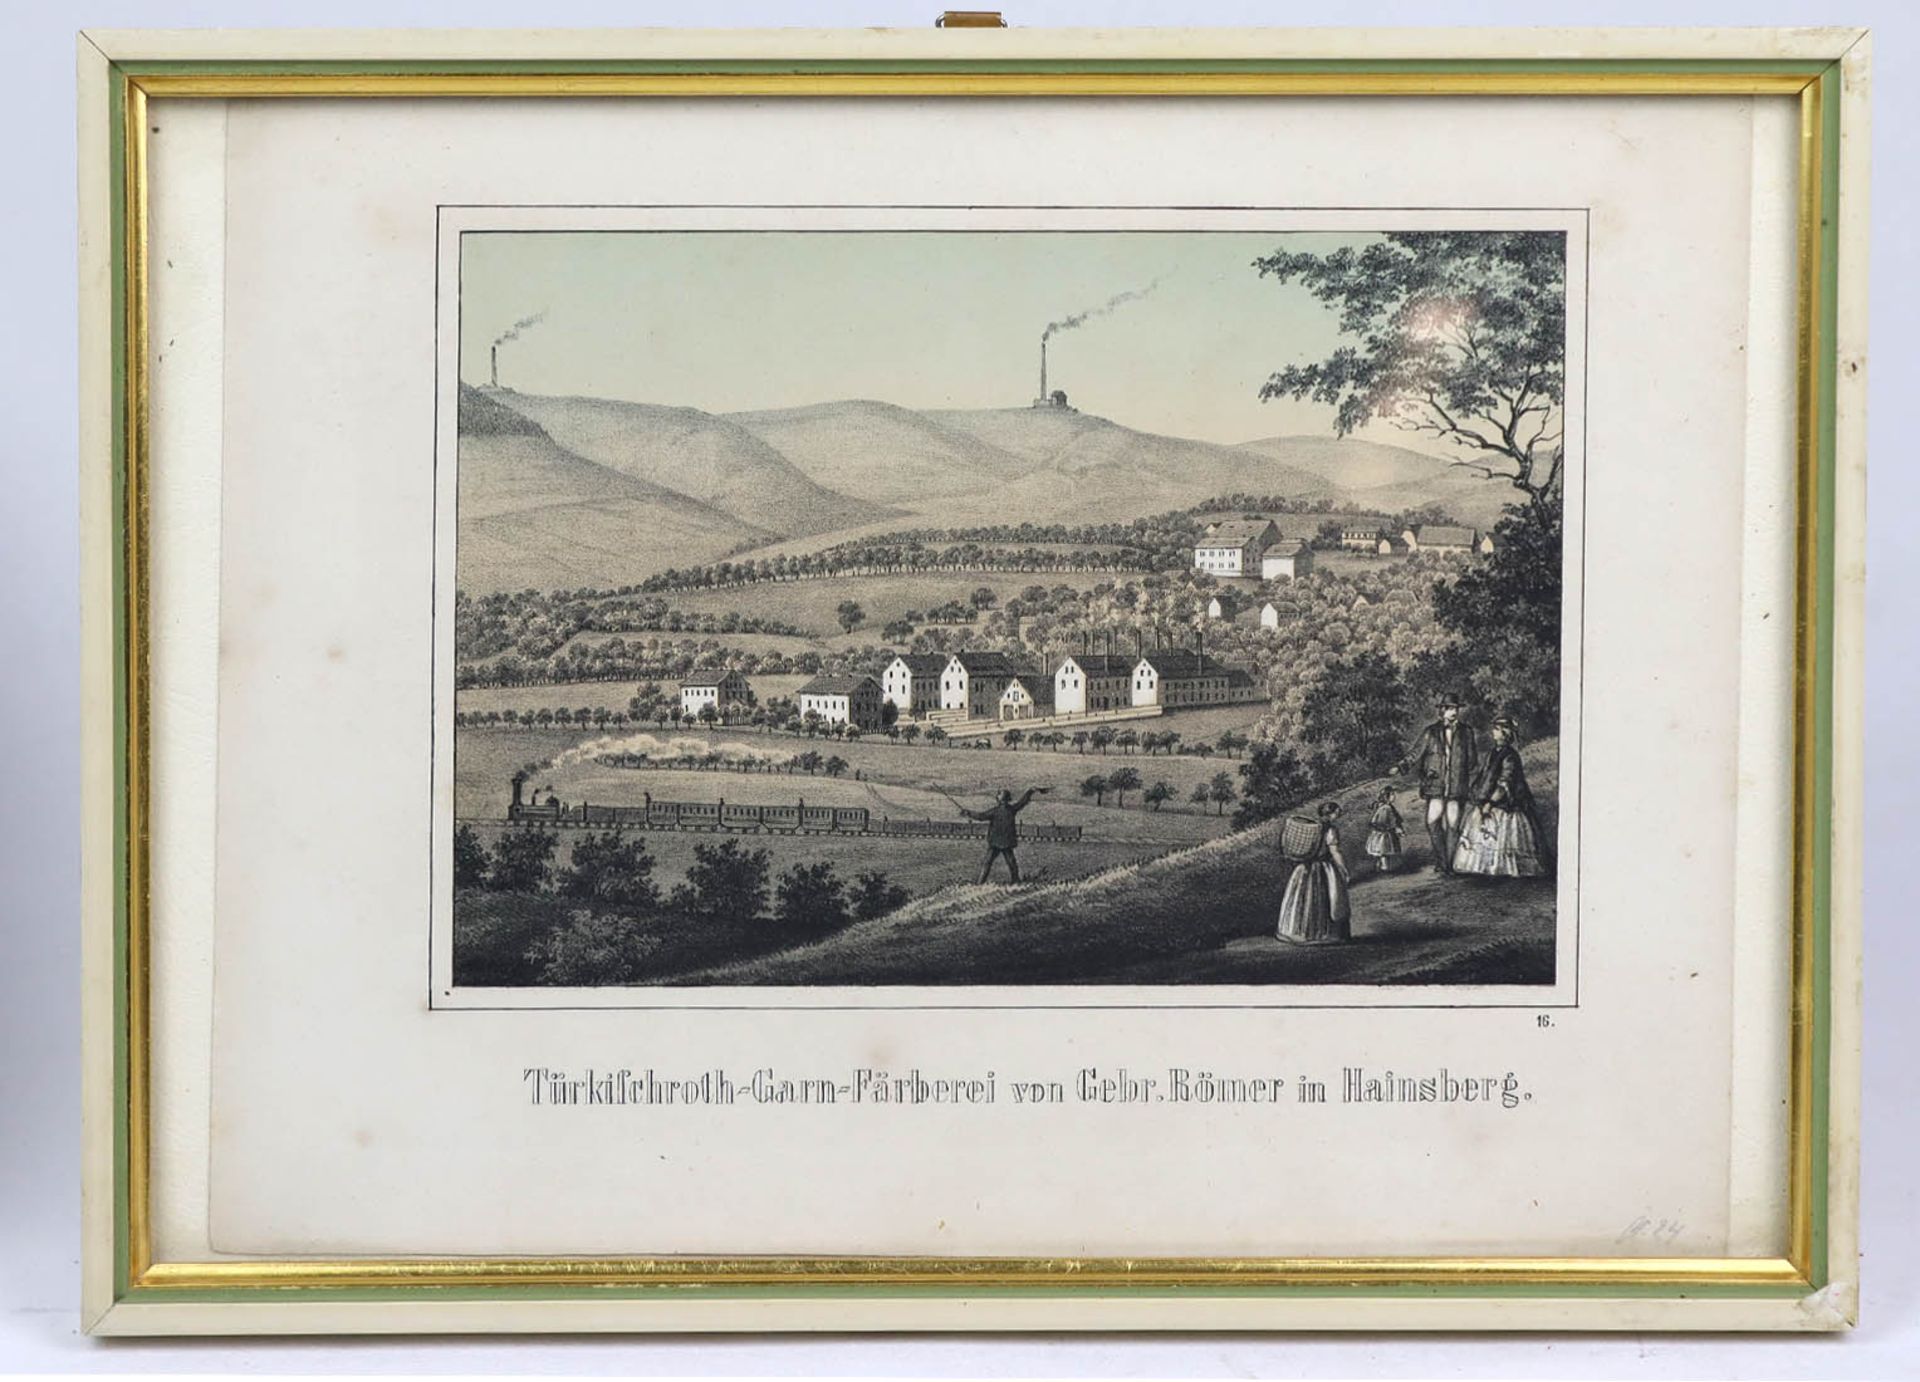 Ansicht in HainsbergLithographie mittig bezeichnet *Türkischroth-Garn-Färberei von gebr. Bömer in